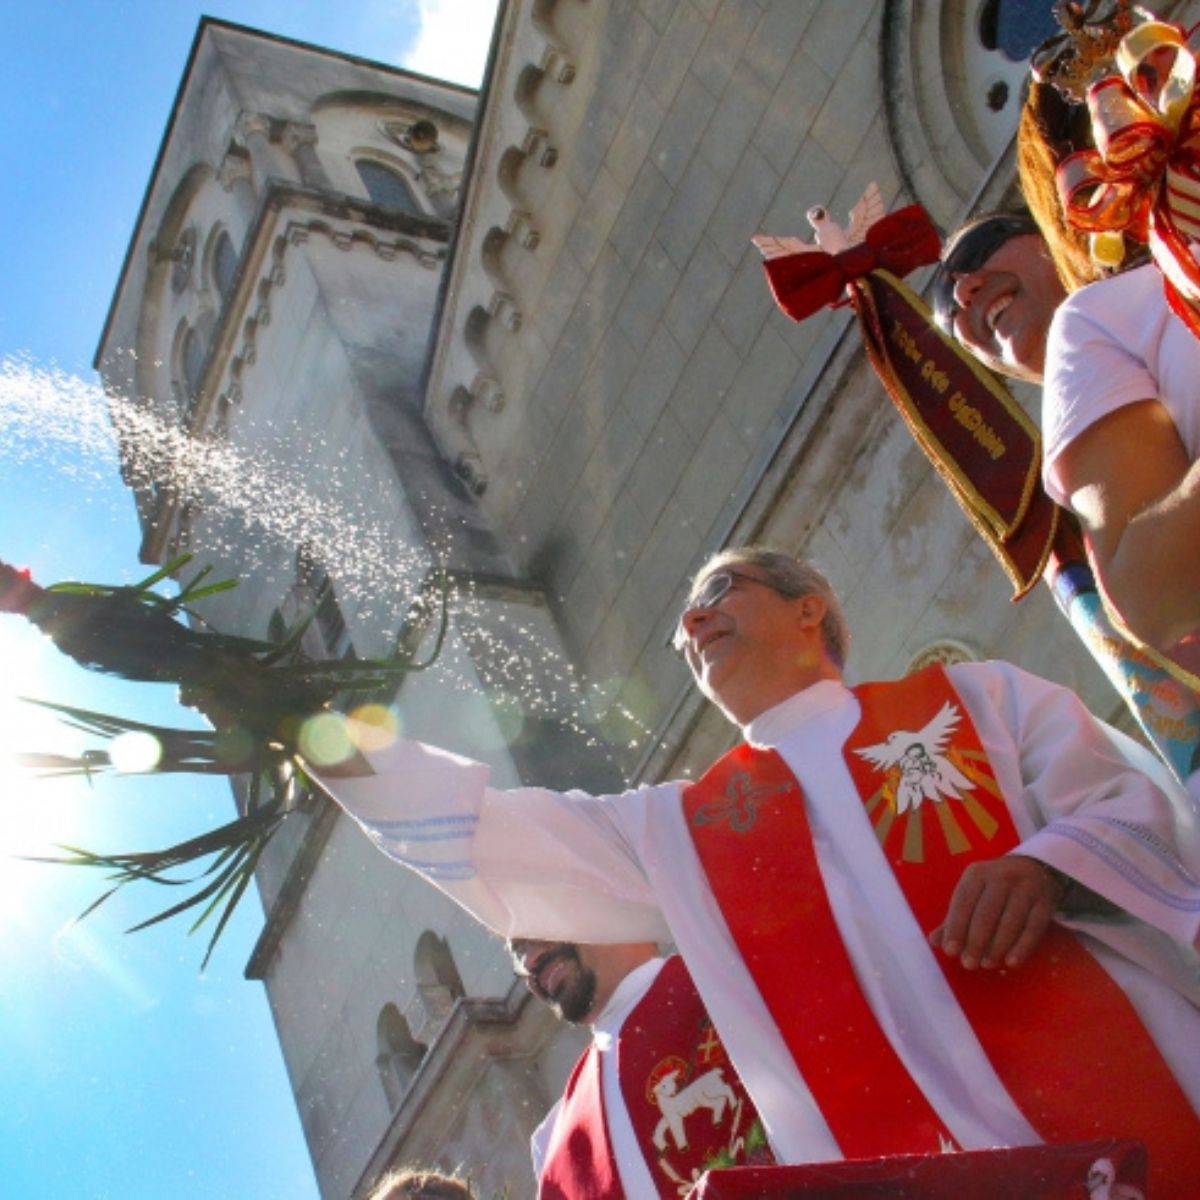  Festa do Divino e Religiosidade: O Encontro entre Fé e Tradição 